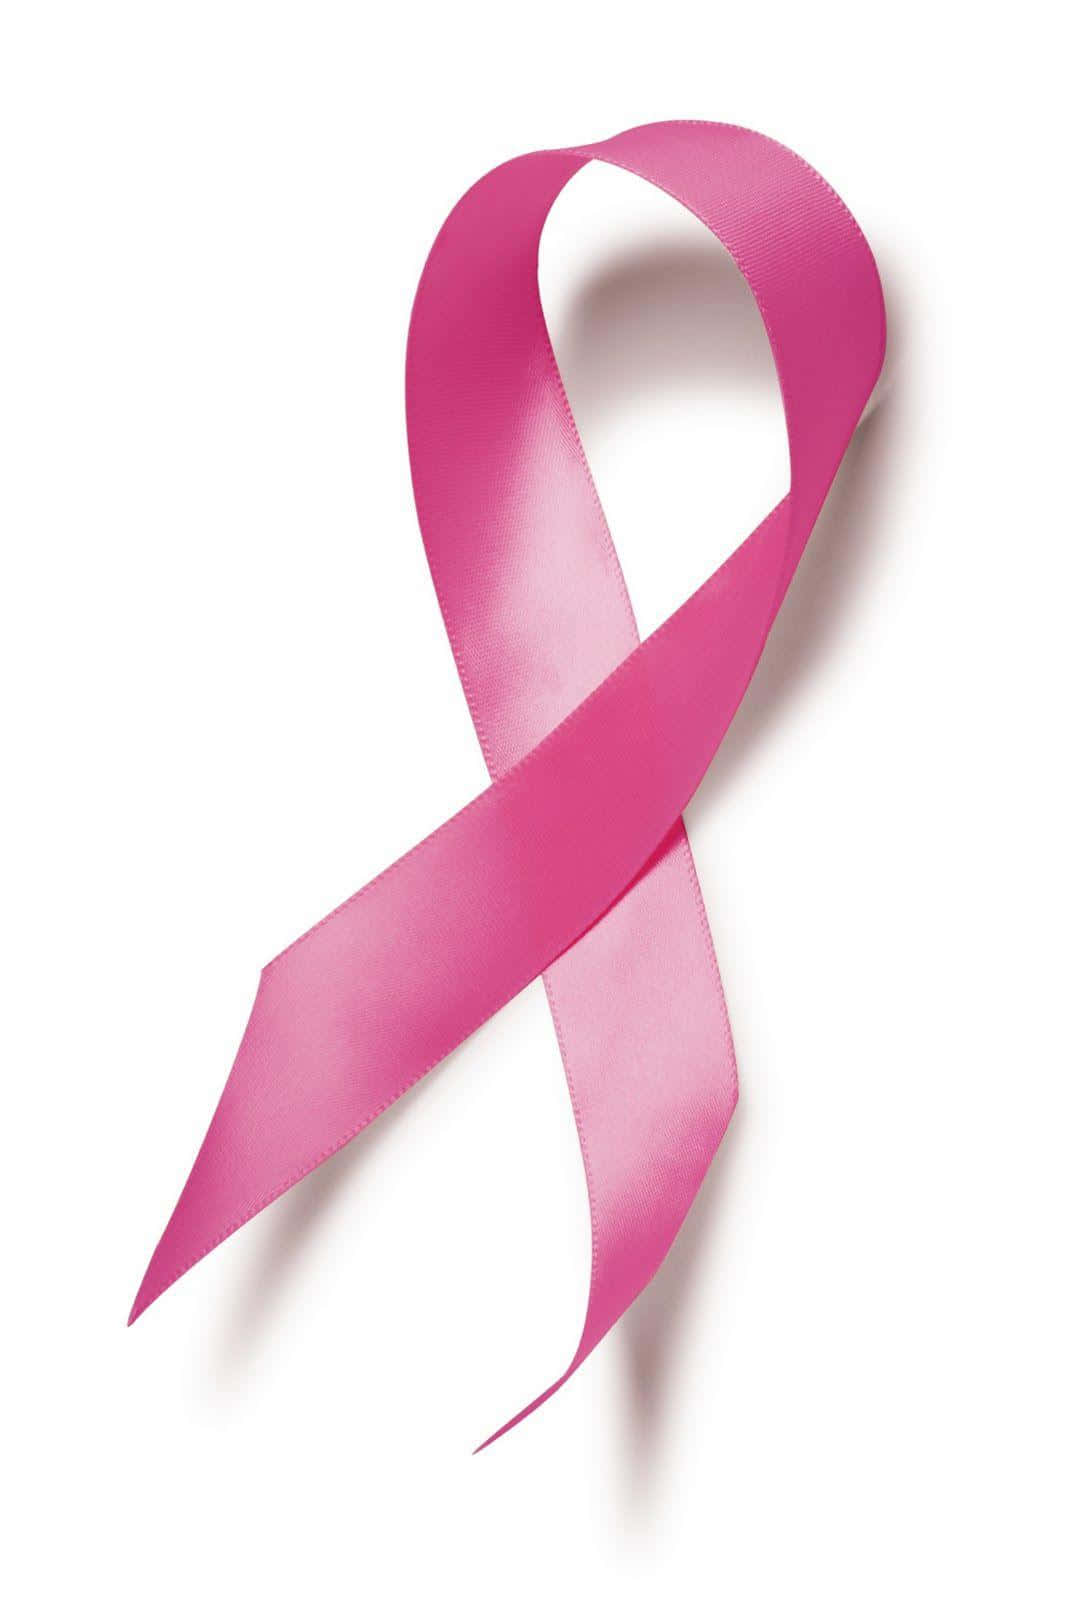 Empowering Pink Ribbon Symbol Wallpaper